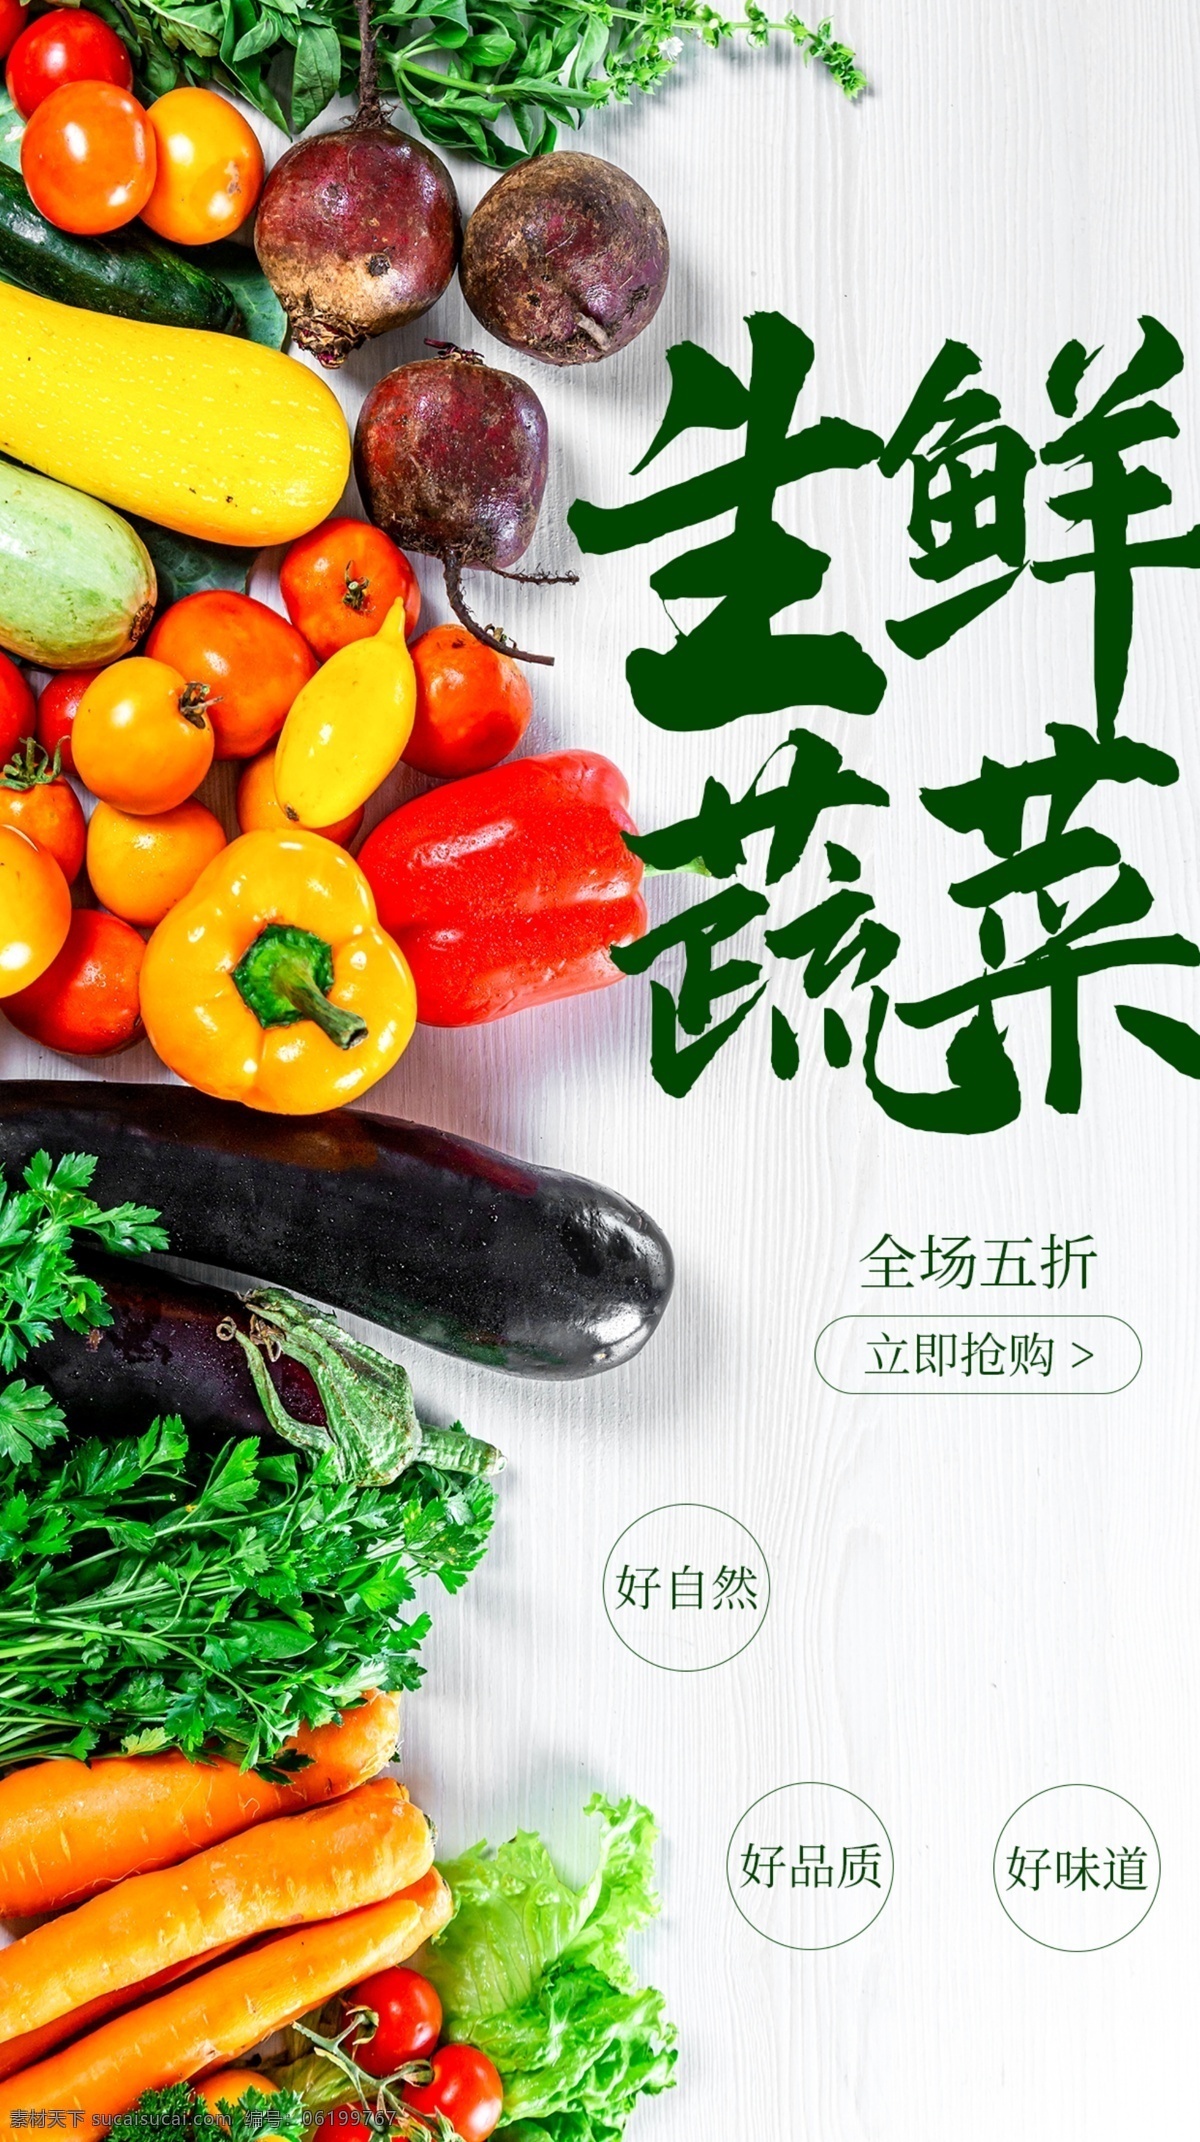 生鲜 蔬菜 美食 食 材 海报 素材图片 生鲜蔬菜 食材 餐饮美食 类